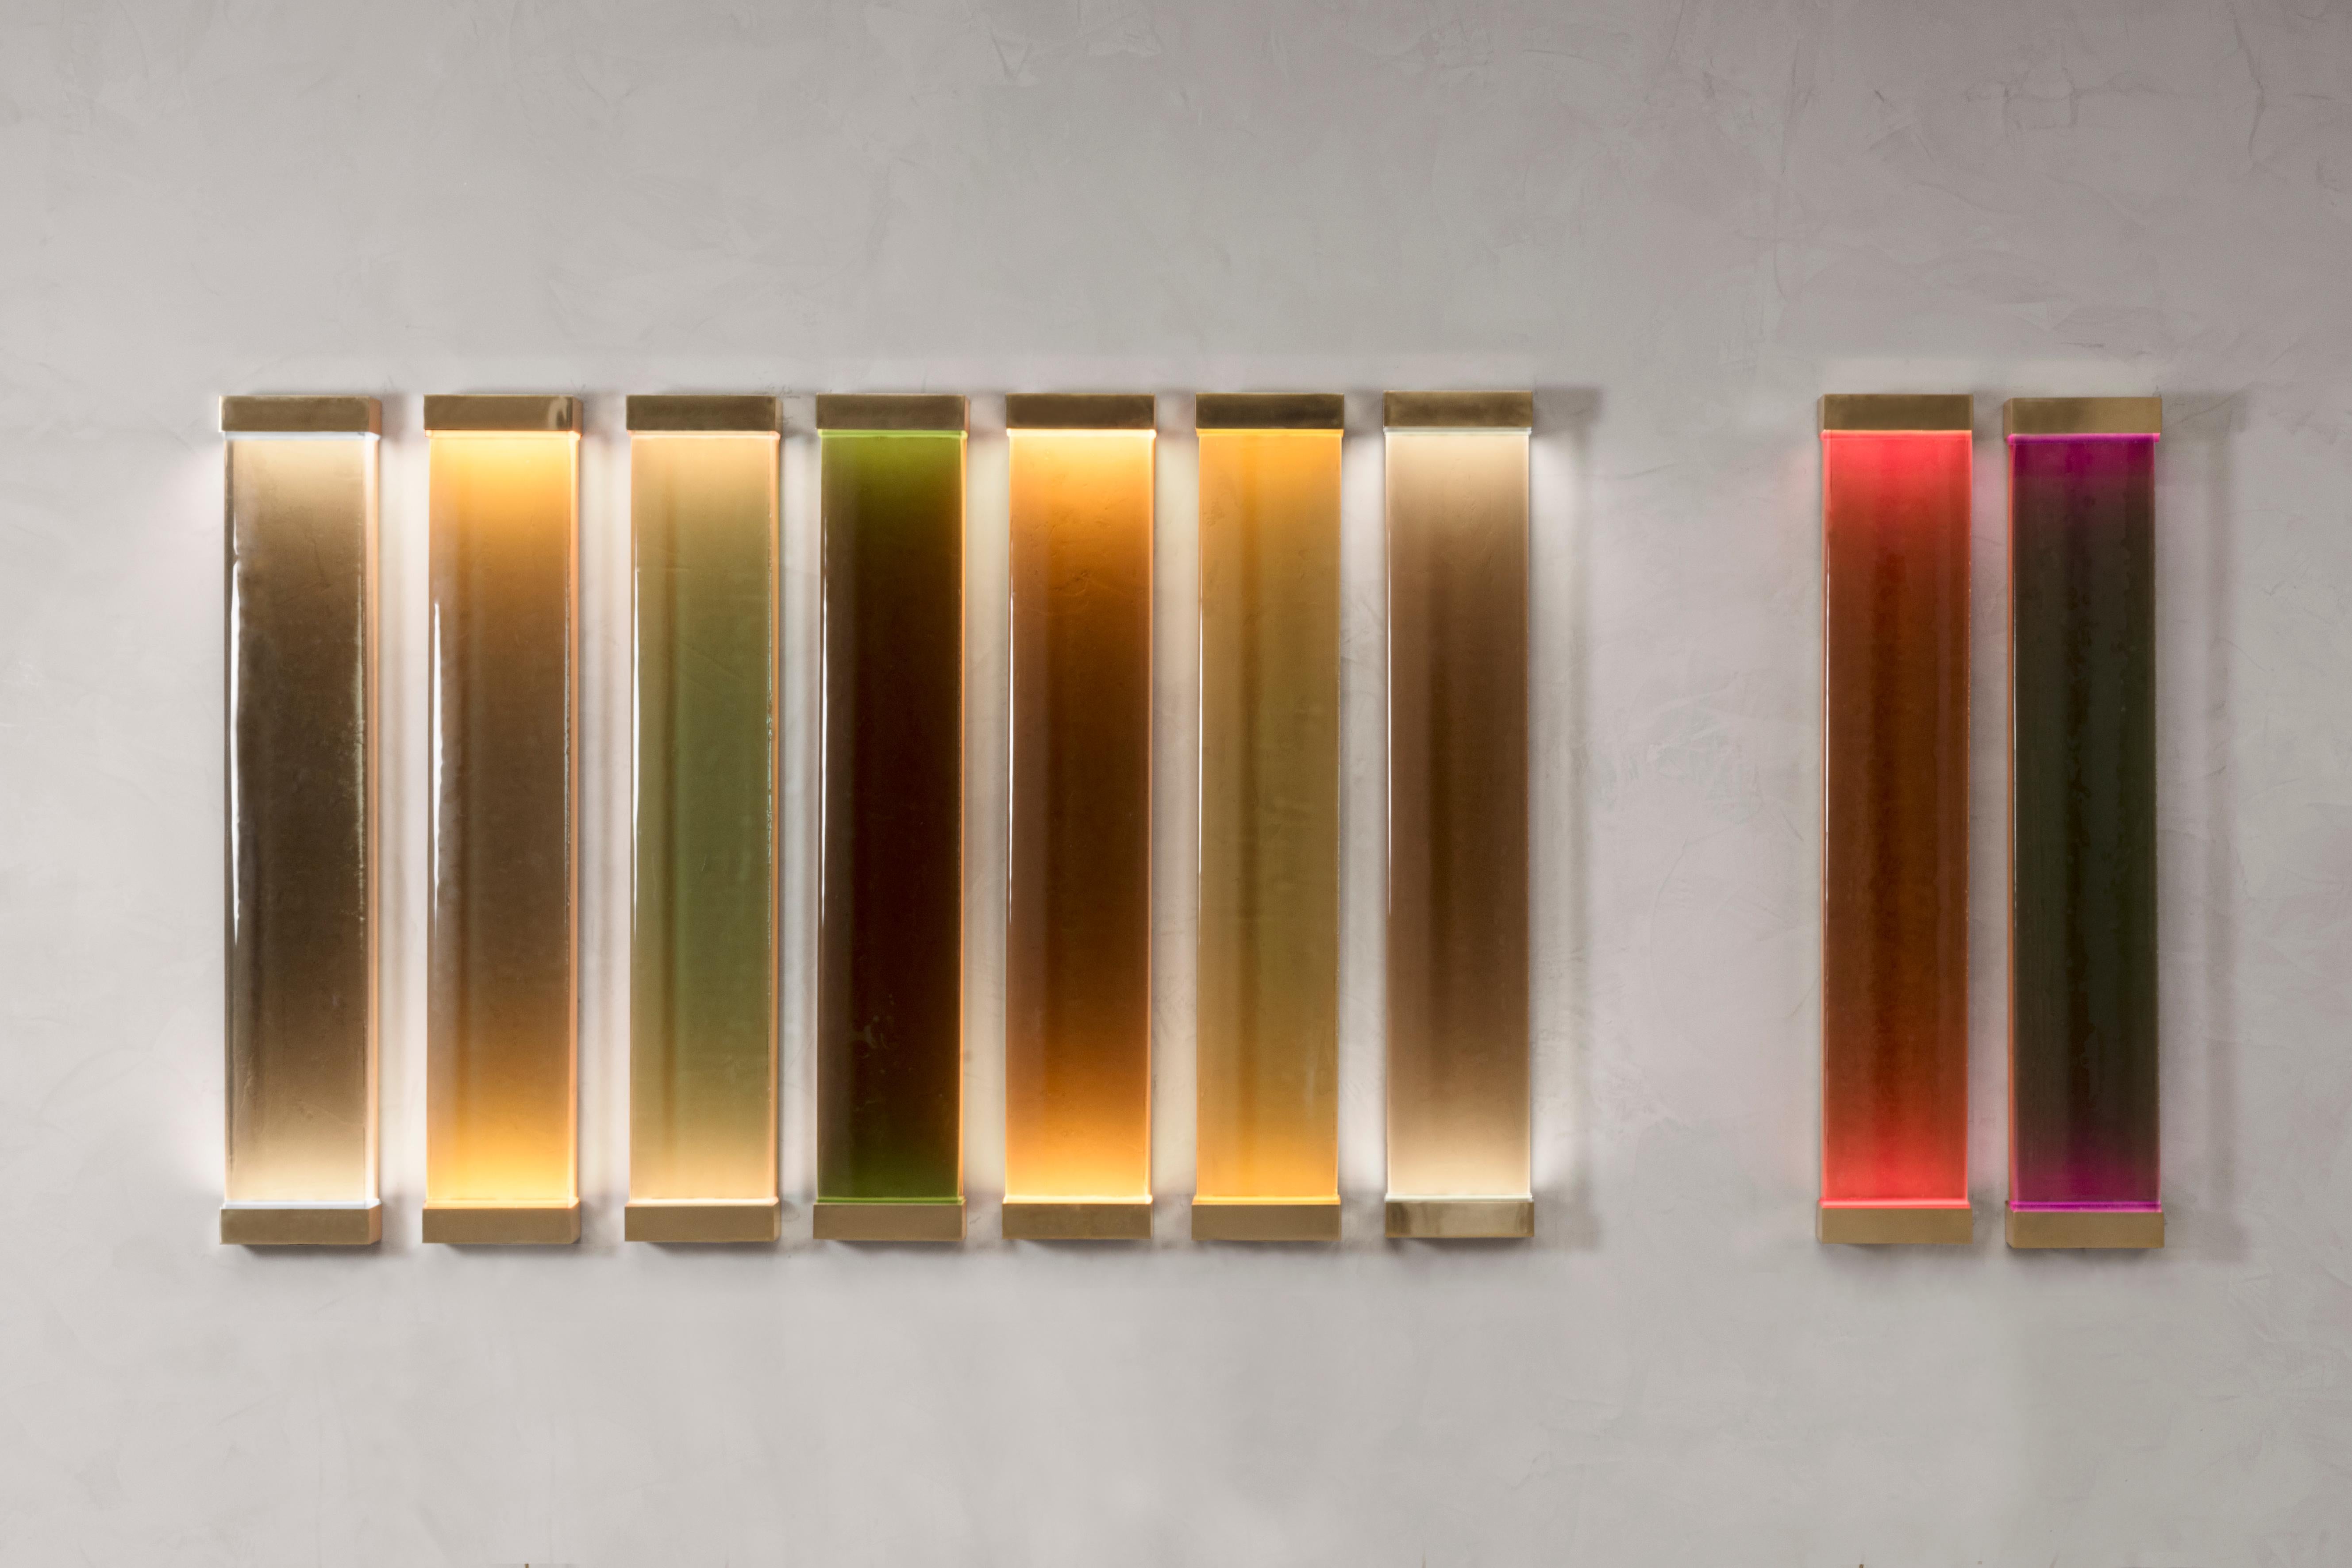 Die vom Minimalismus inspirierten Jud-Lampen sind eine Hommage an den Künstler Donald Judd. Die verschiedenen Schattierungen der lichtdurchlässigen Glas- und Harzfilter wurden zu einem kohärenten und ausgewogenen Farbschema verschmolzen. Jedes Stück